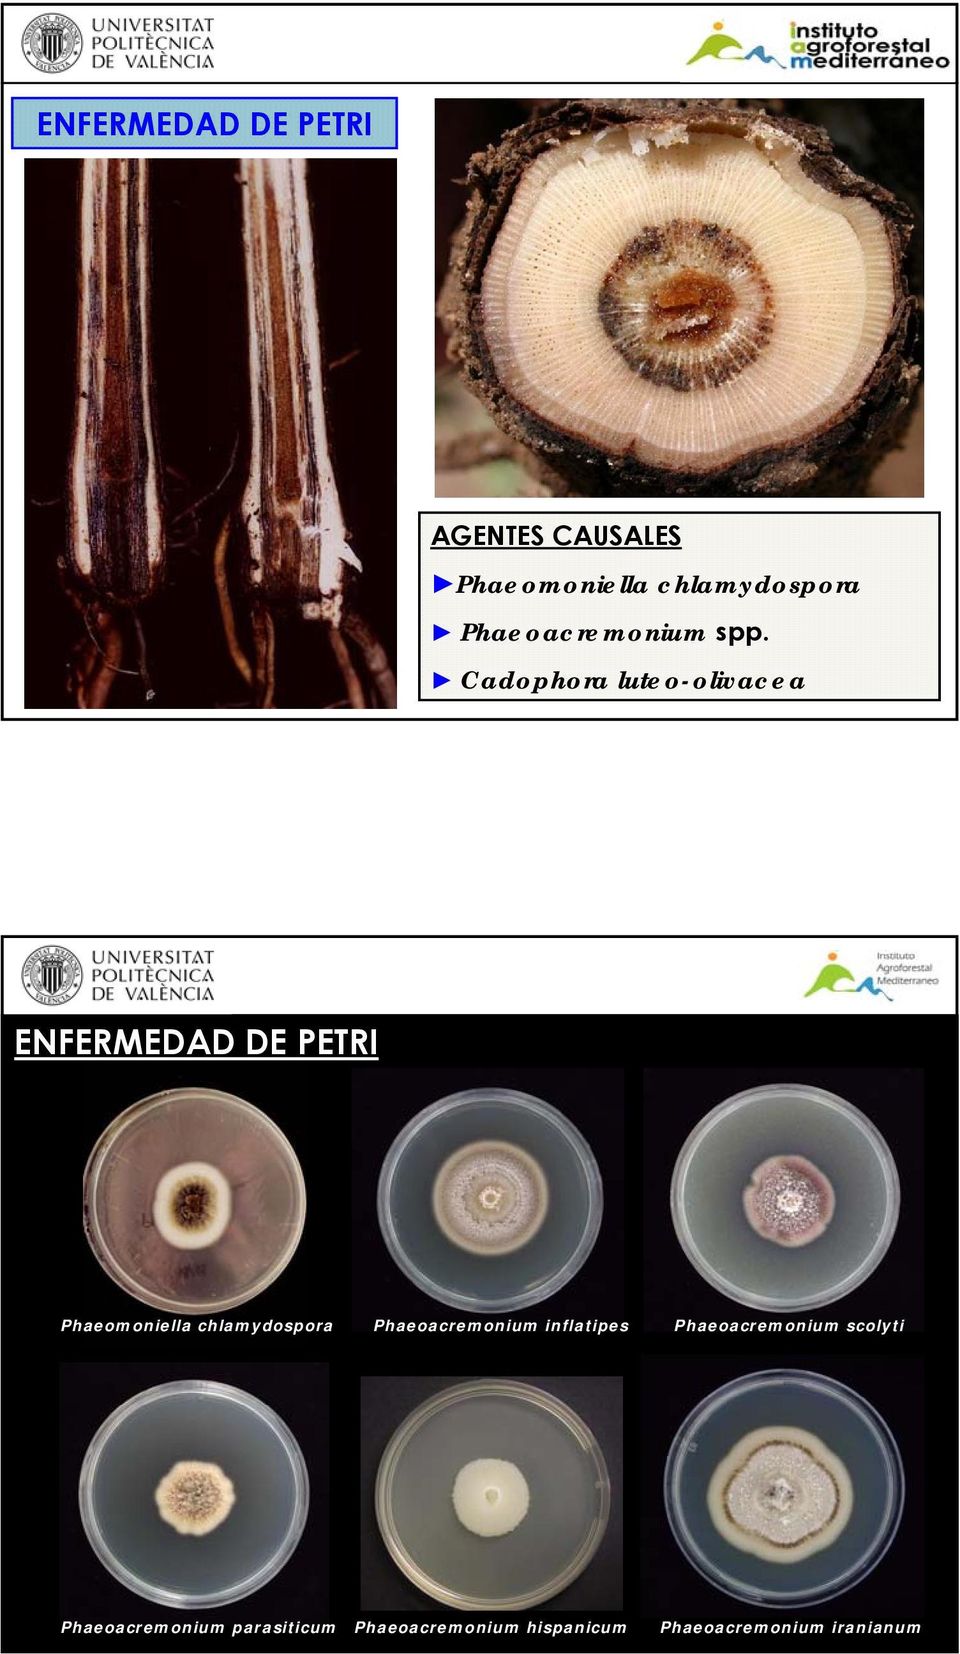 Cadophora luteo-olivacea ENFERMEDAD DE PETRI Phaeomoniella chlamydospora